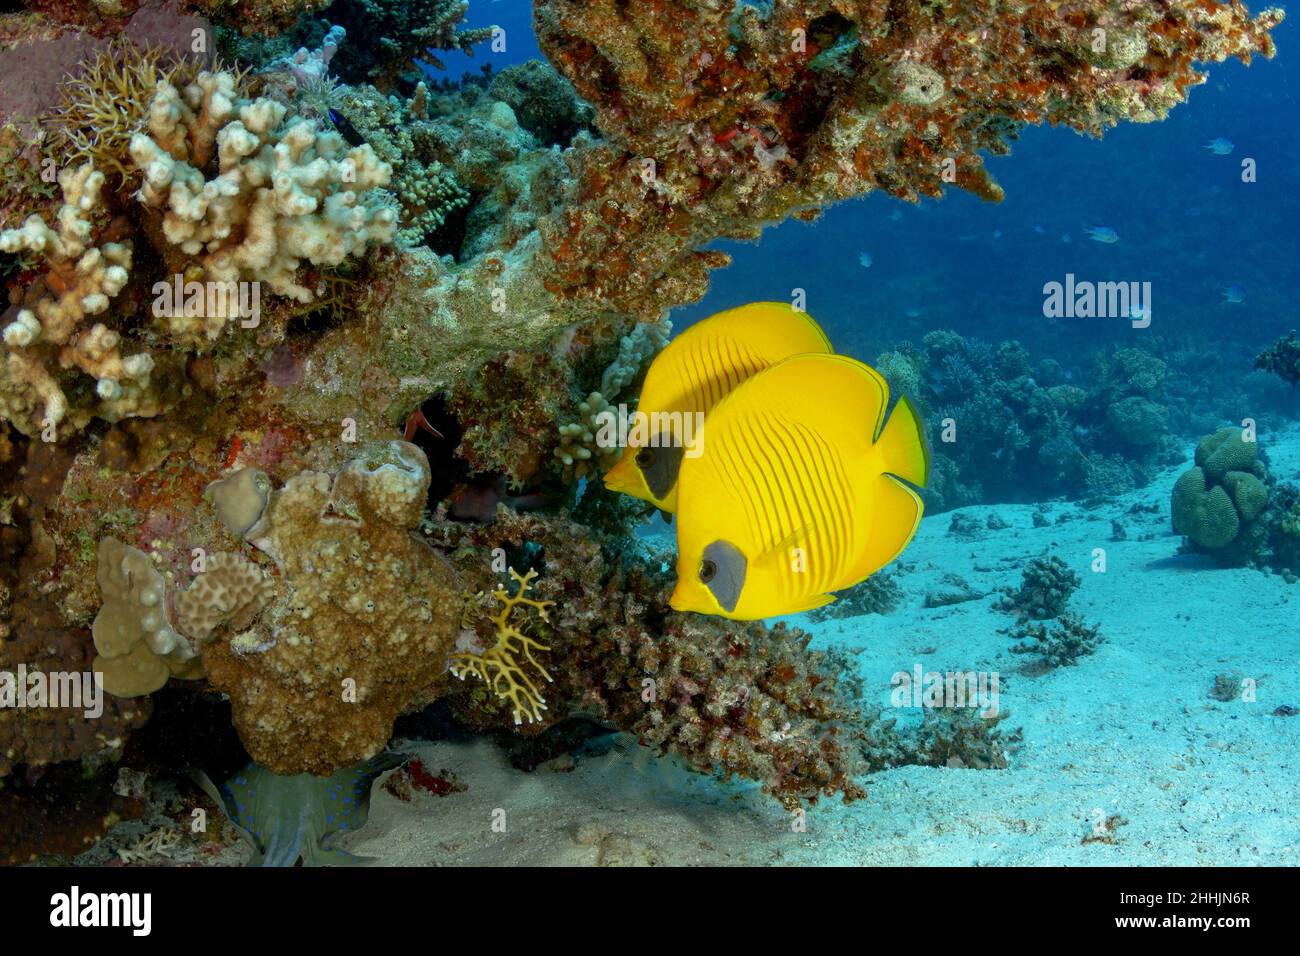 Bunte exotische gelbe Schmetterlingsfische mit schwarzem Auge schwimmen in der Nähe von Korallenriffen tief in klarem Wasser des roten Meeres mit sandigen Boden Stockfoto